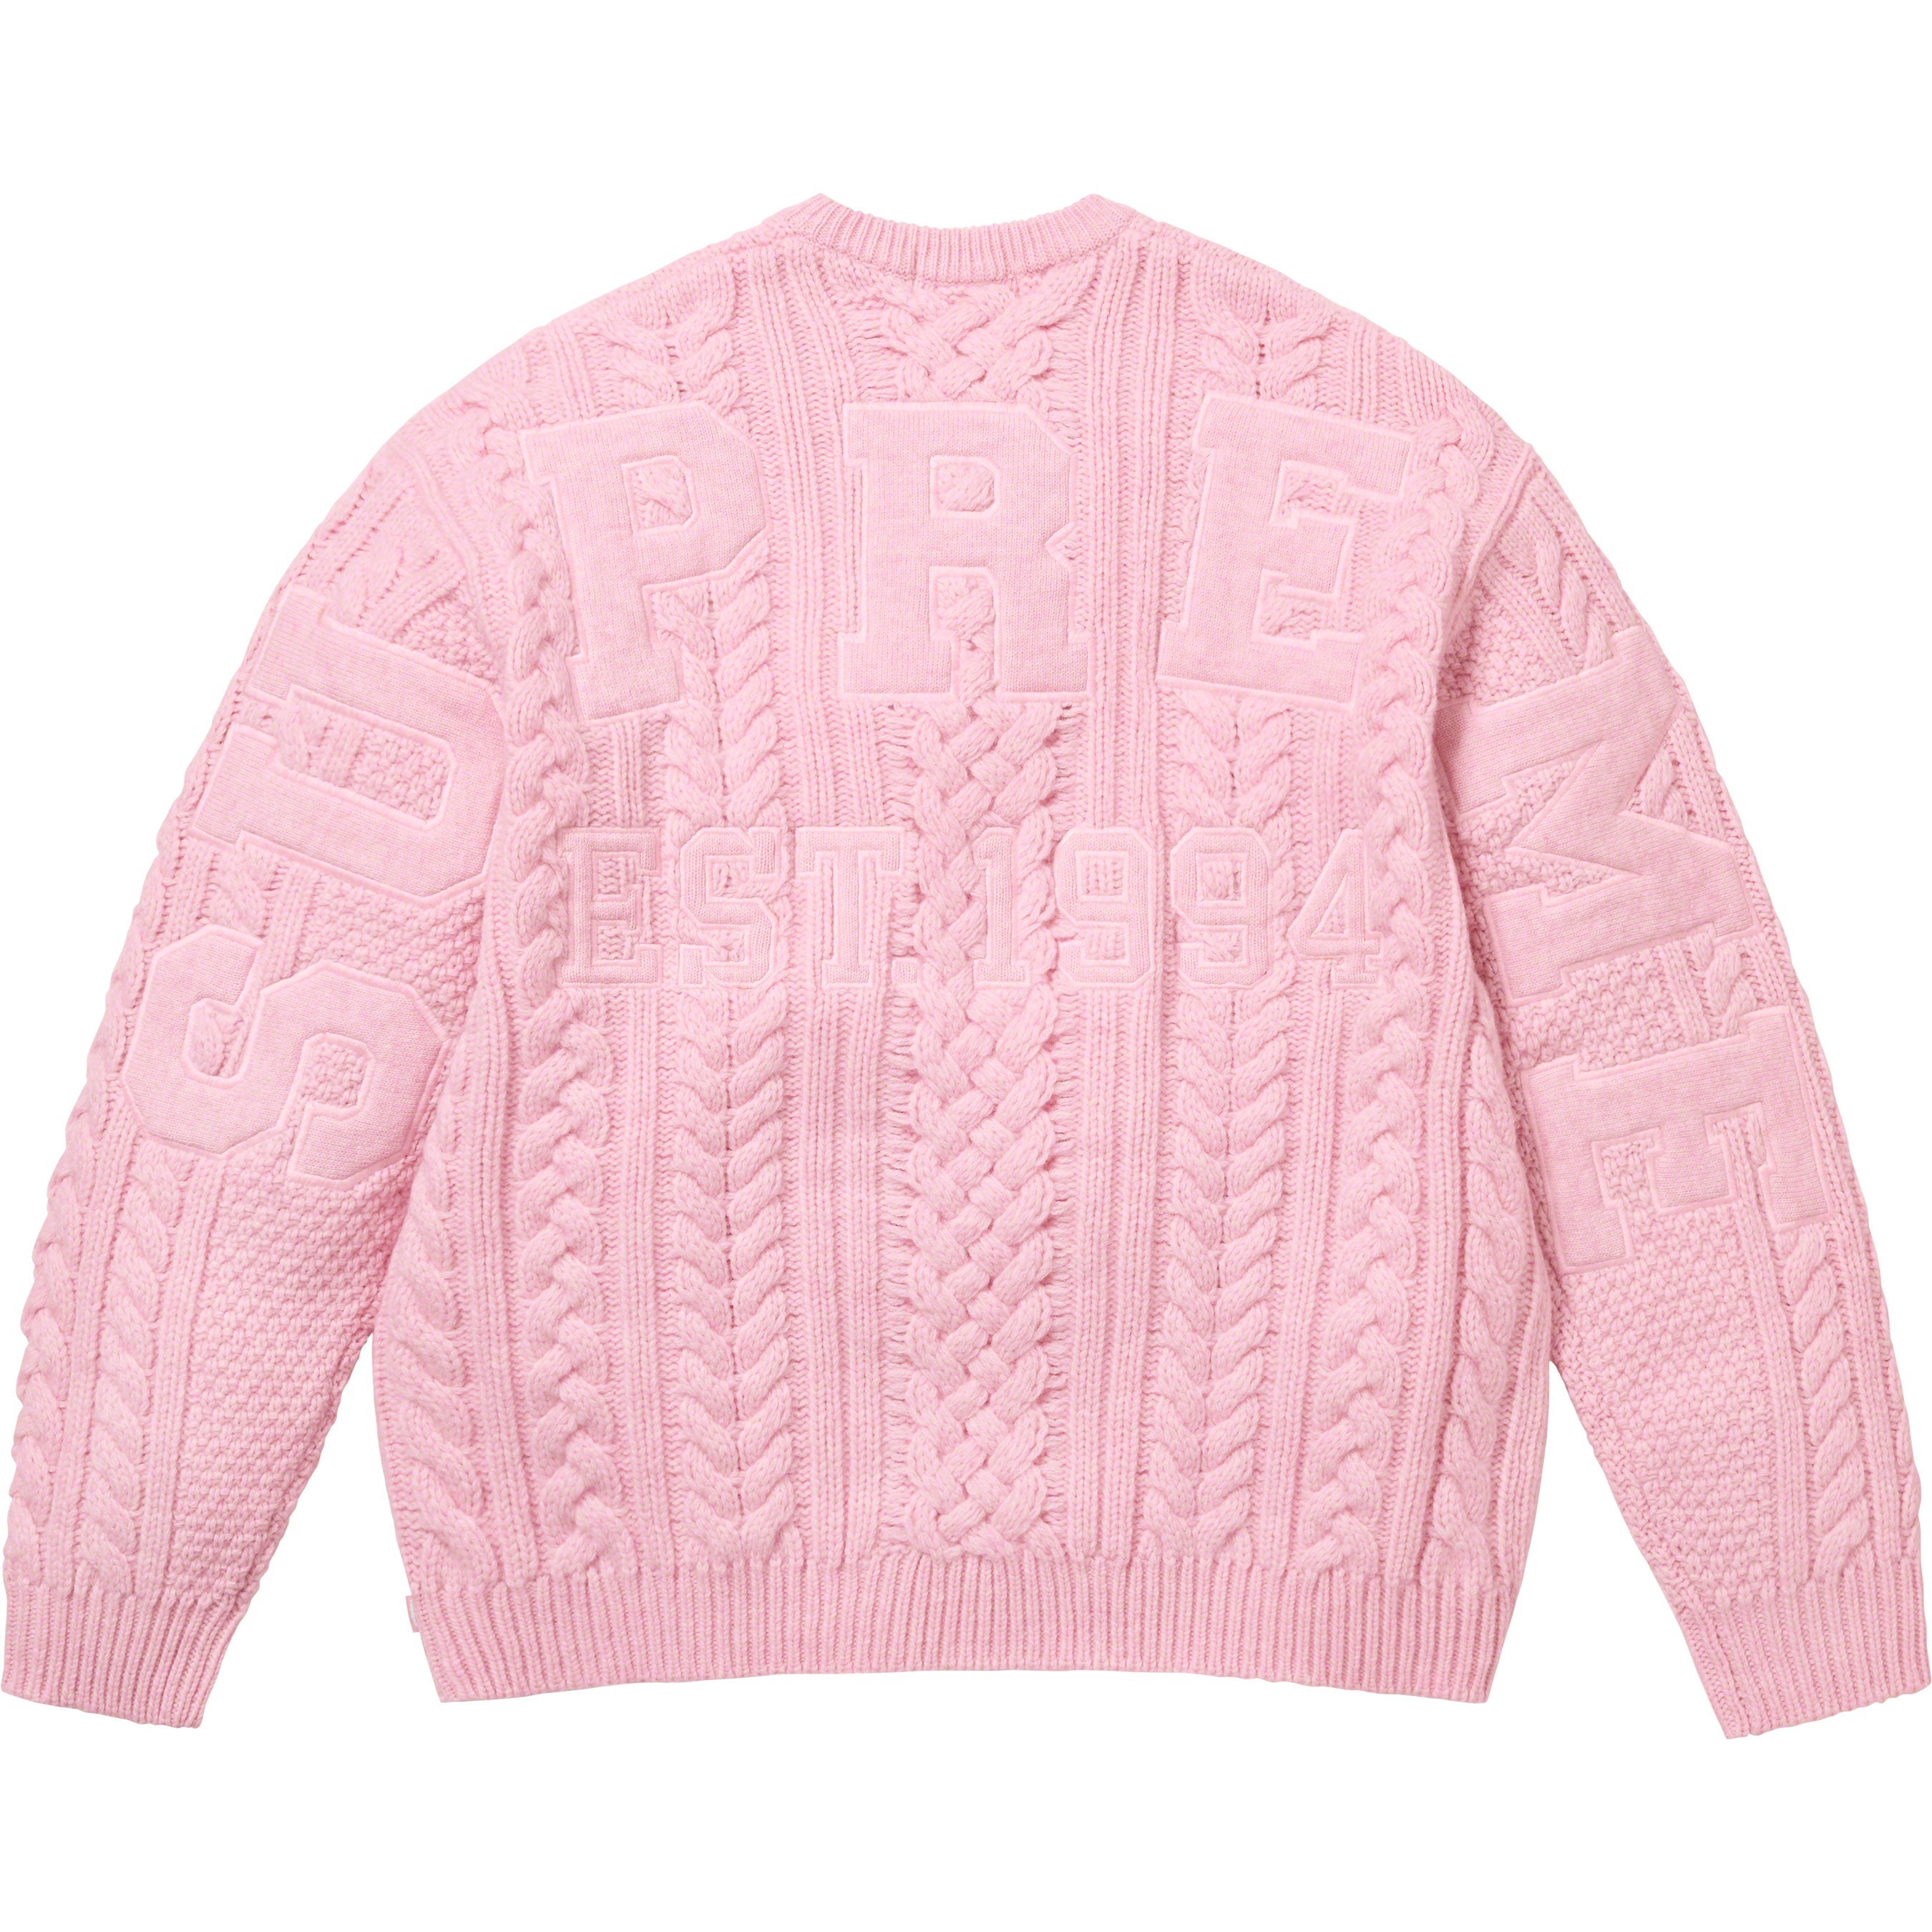 Supreme Applique Cable Knit Sweater店舗で購入